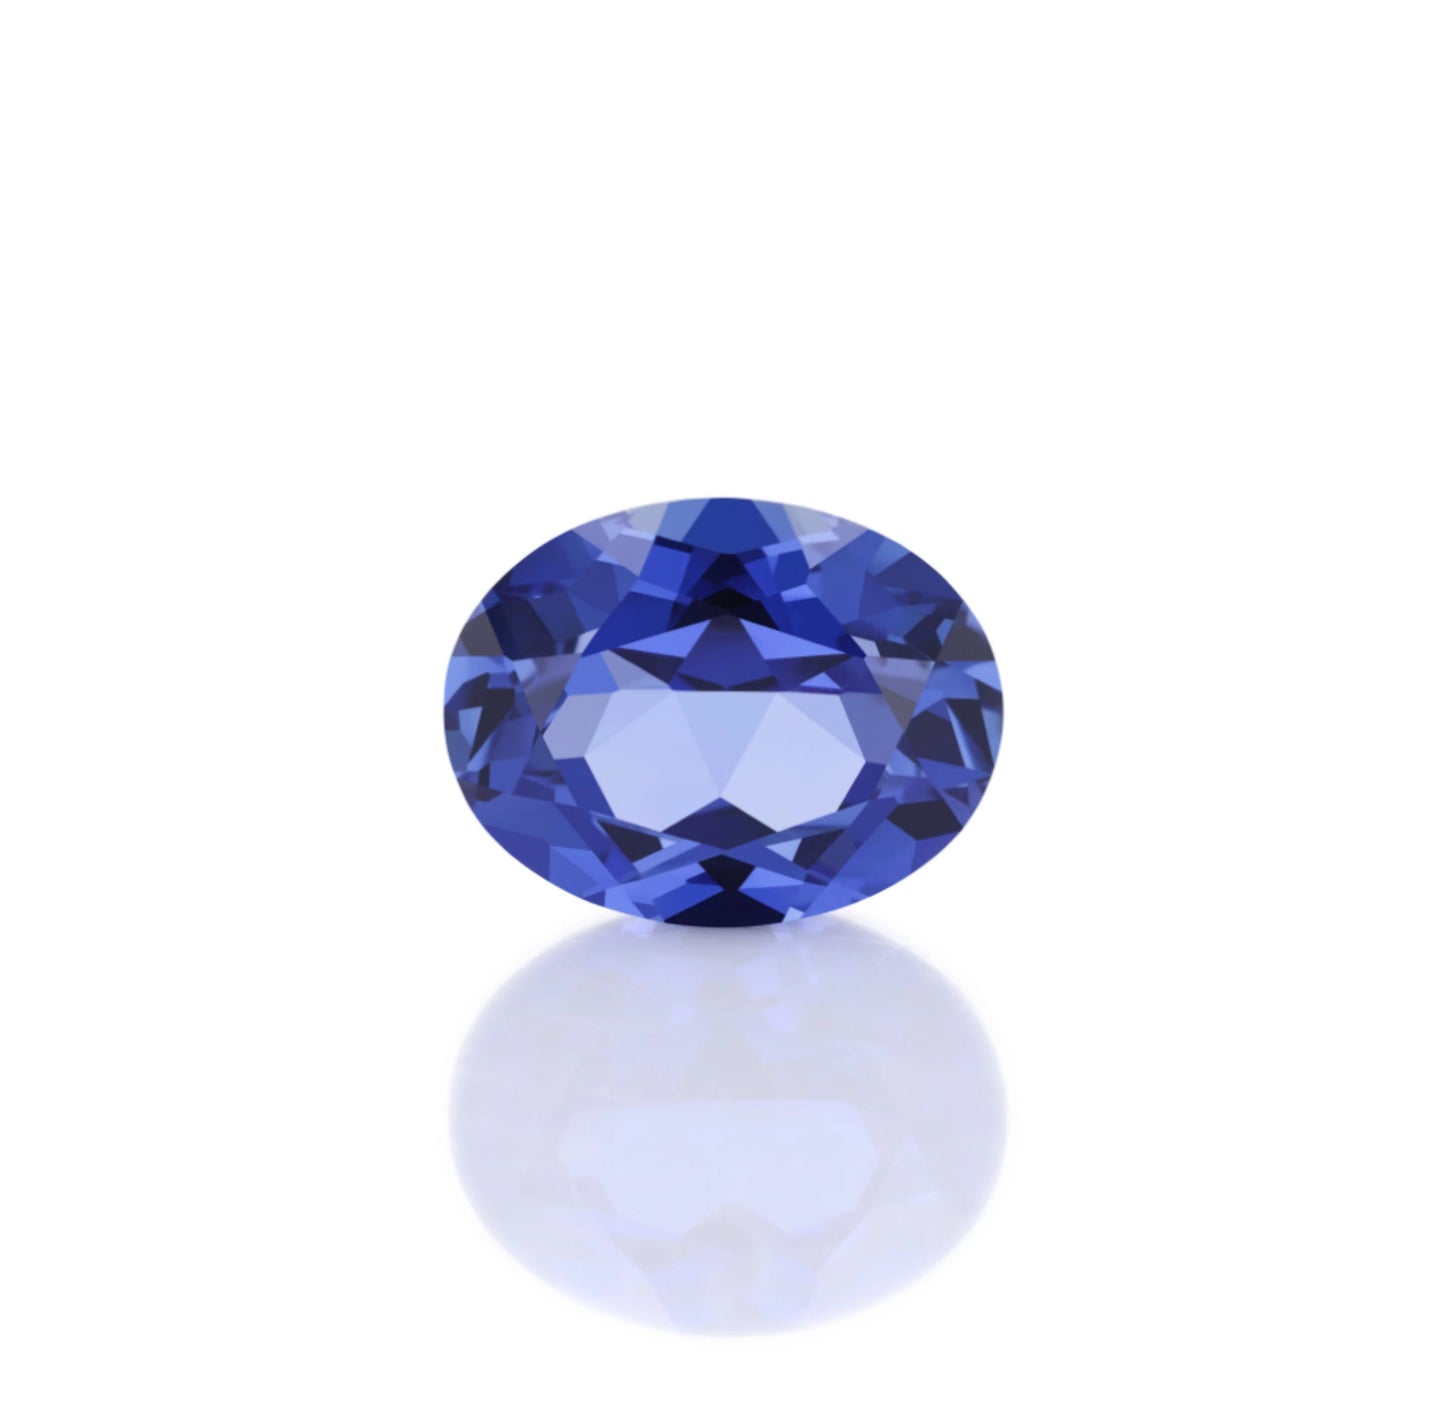 Lab Grown Gemstone Royal blue Oval cut